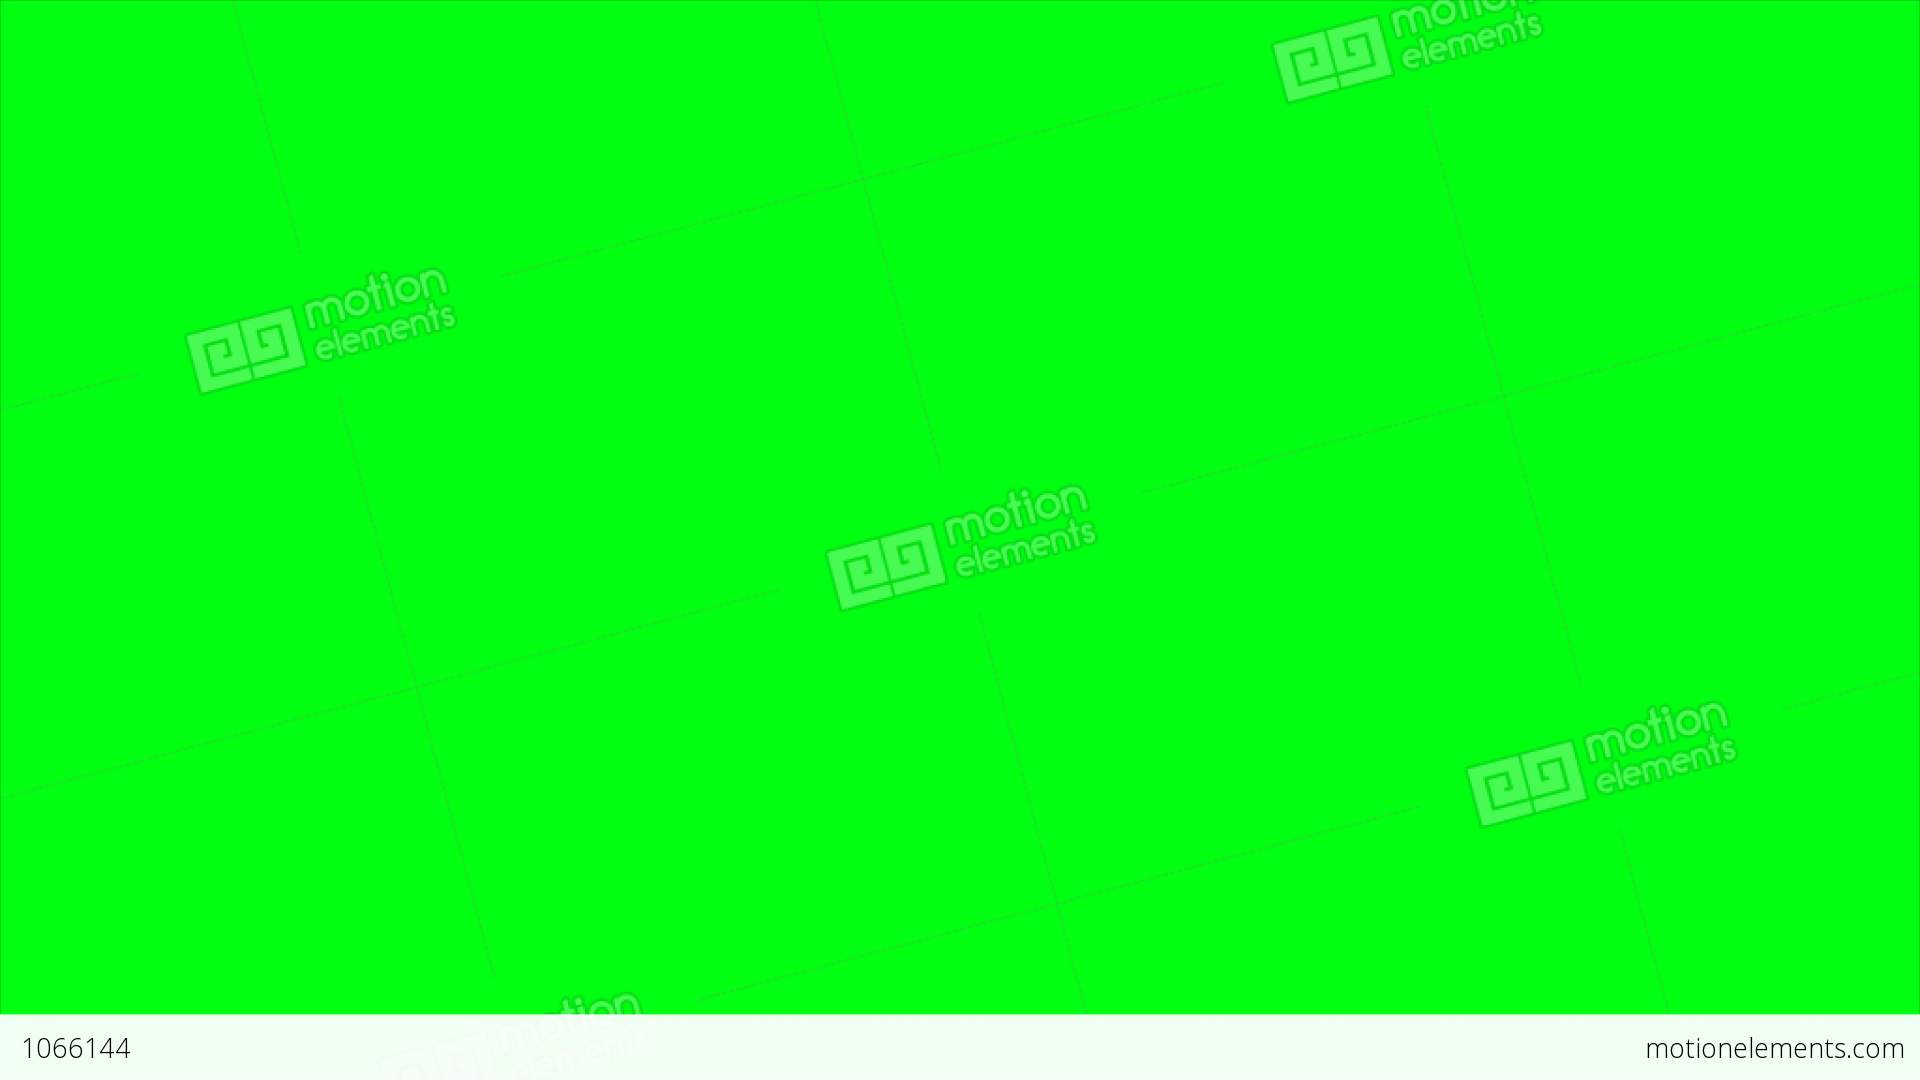 Green Screen Hand Animation Stock Video Footage: Đây là video chuyển động tay trên màn hình, được xóa phông để bạn có thể sử dụng trong các dự án sáng tạo của mình. Hãy xem hình ảnh để biết thêm chi tiết về video này và cách sử dụng nó làm phần động để tăng tính chuyên nghiệp cho dự án của bạn.